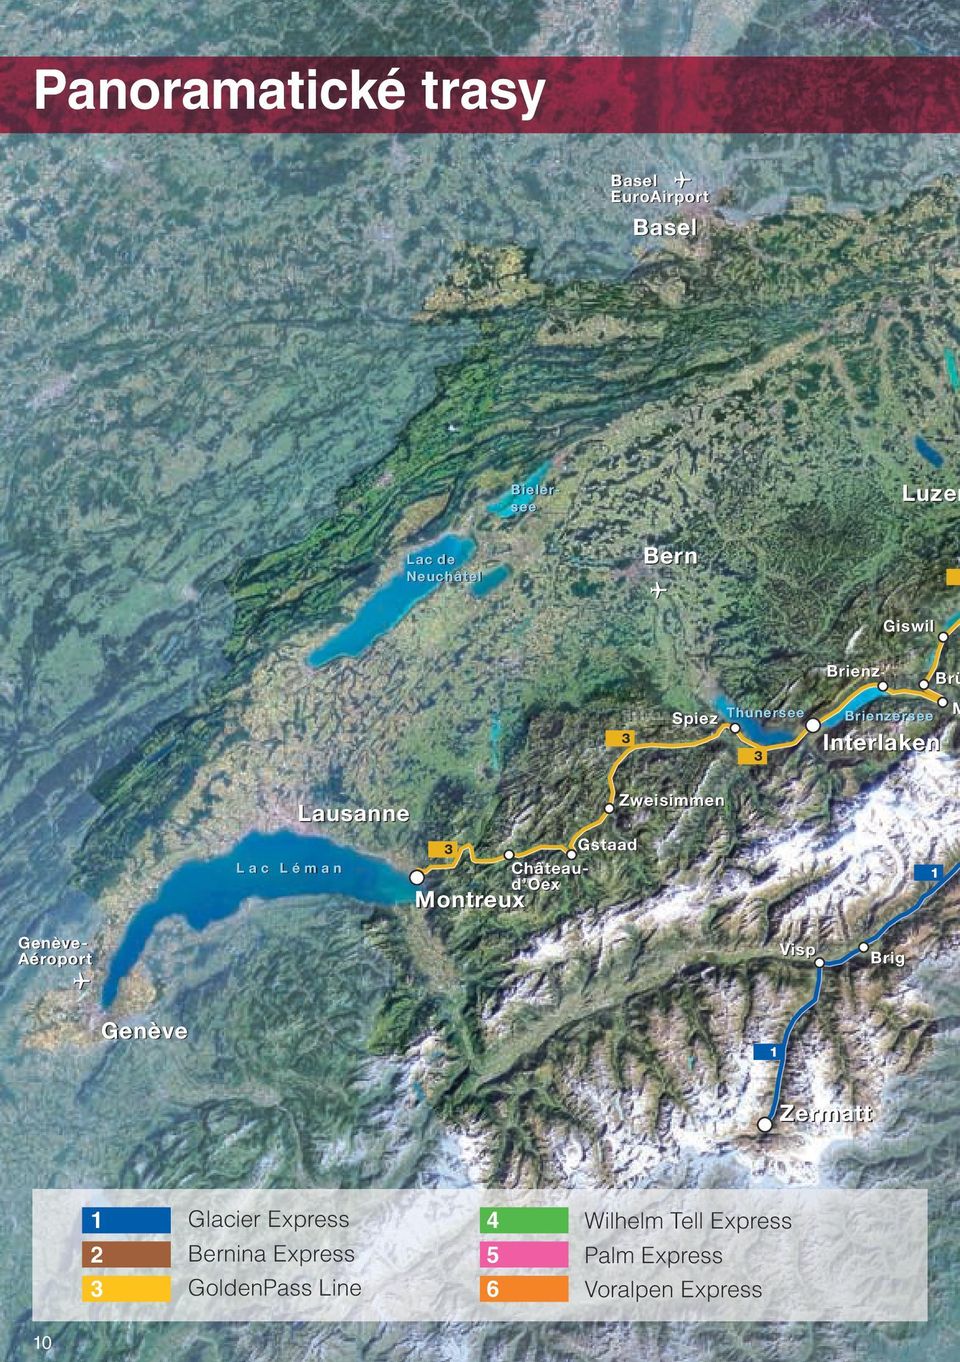 Aéroport Gstaad Châteaud Oex Zweisimmen 1 Visp Brig Genève 1 Zermatt 1 2 3 Glacier Express